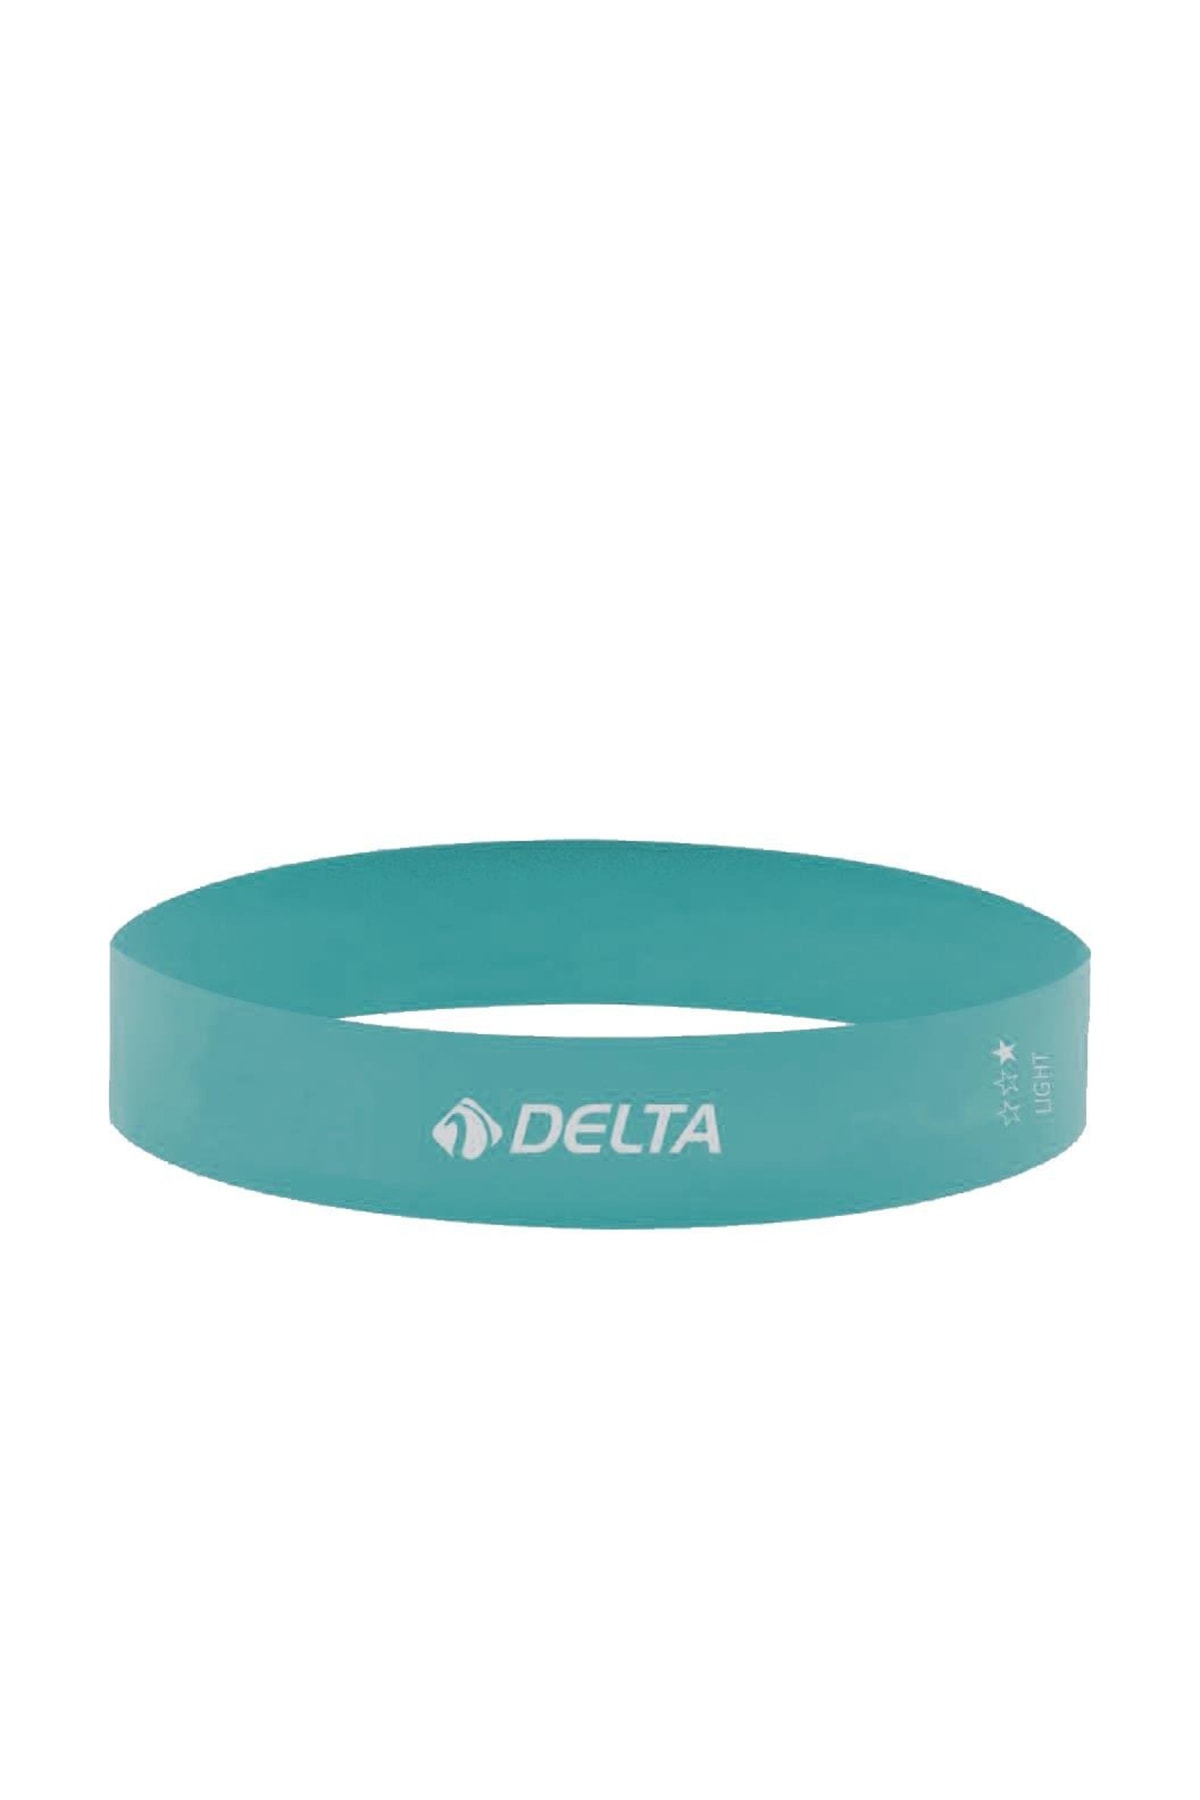 Delta Hafif Sert Aerobik Bandı Latex Bant Pilates Yoga Lastiği